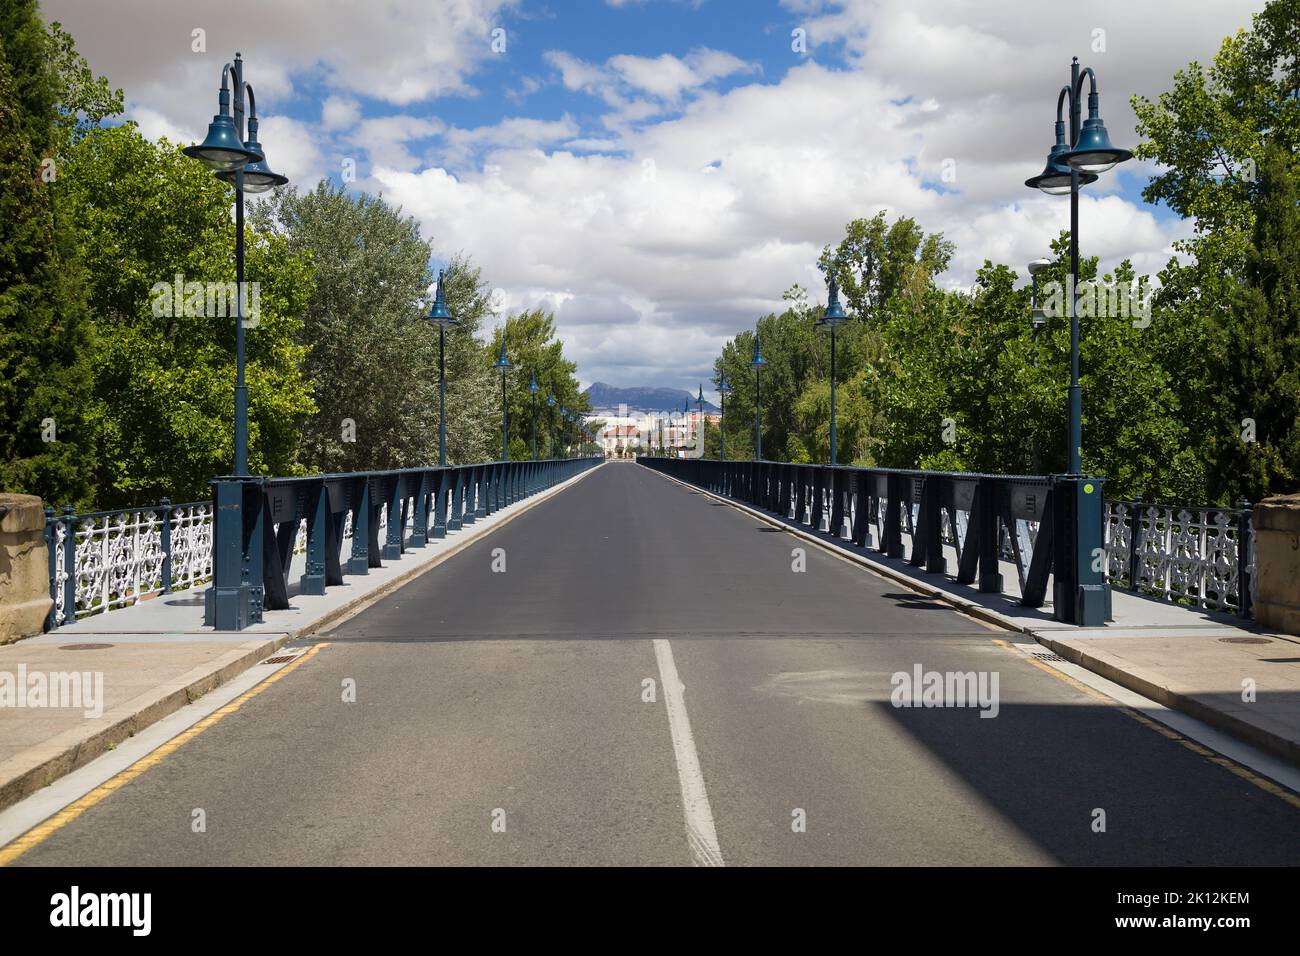 The Iron Bridge of Logrono, Spain. Stock Photo